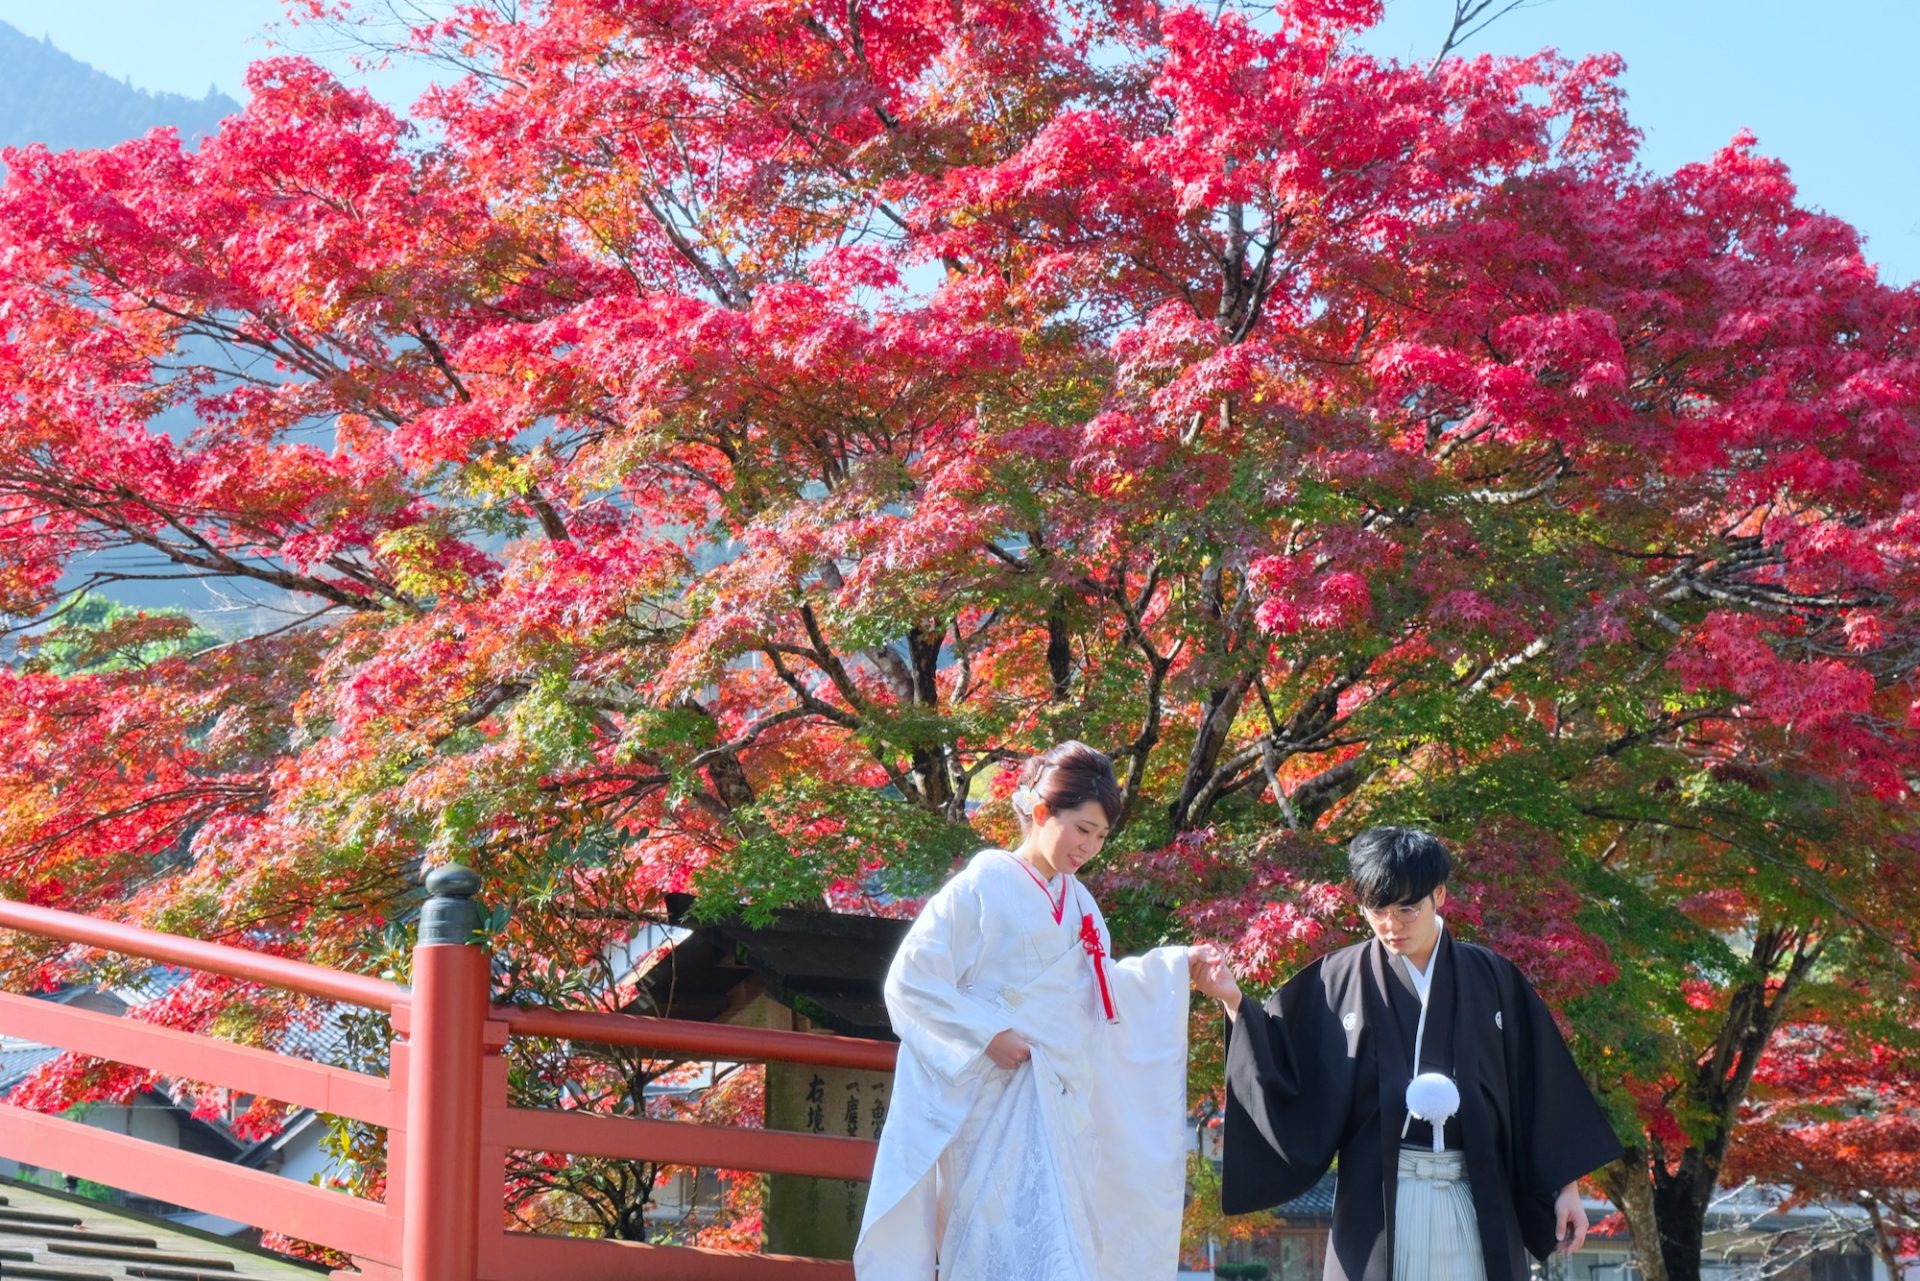 【和装フォトウエディング】奈良の紅葉の名所を巡るロケーションフォト